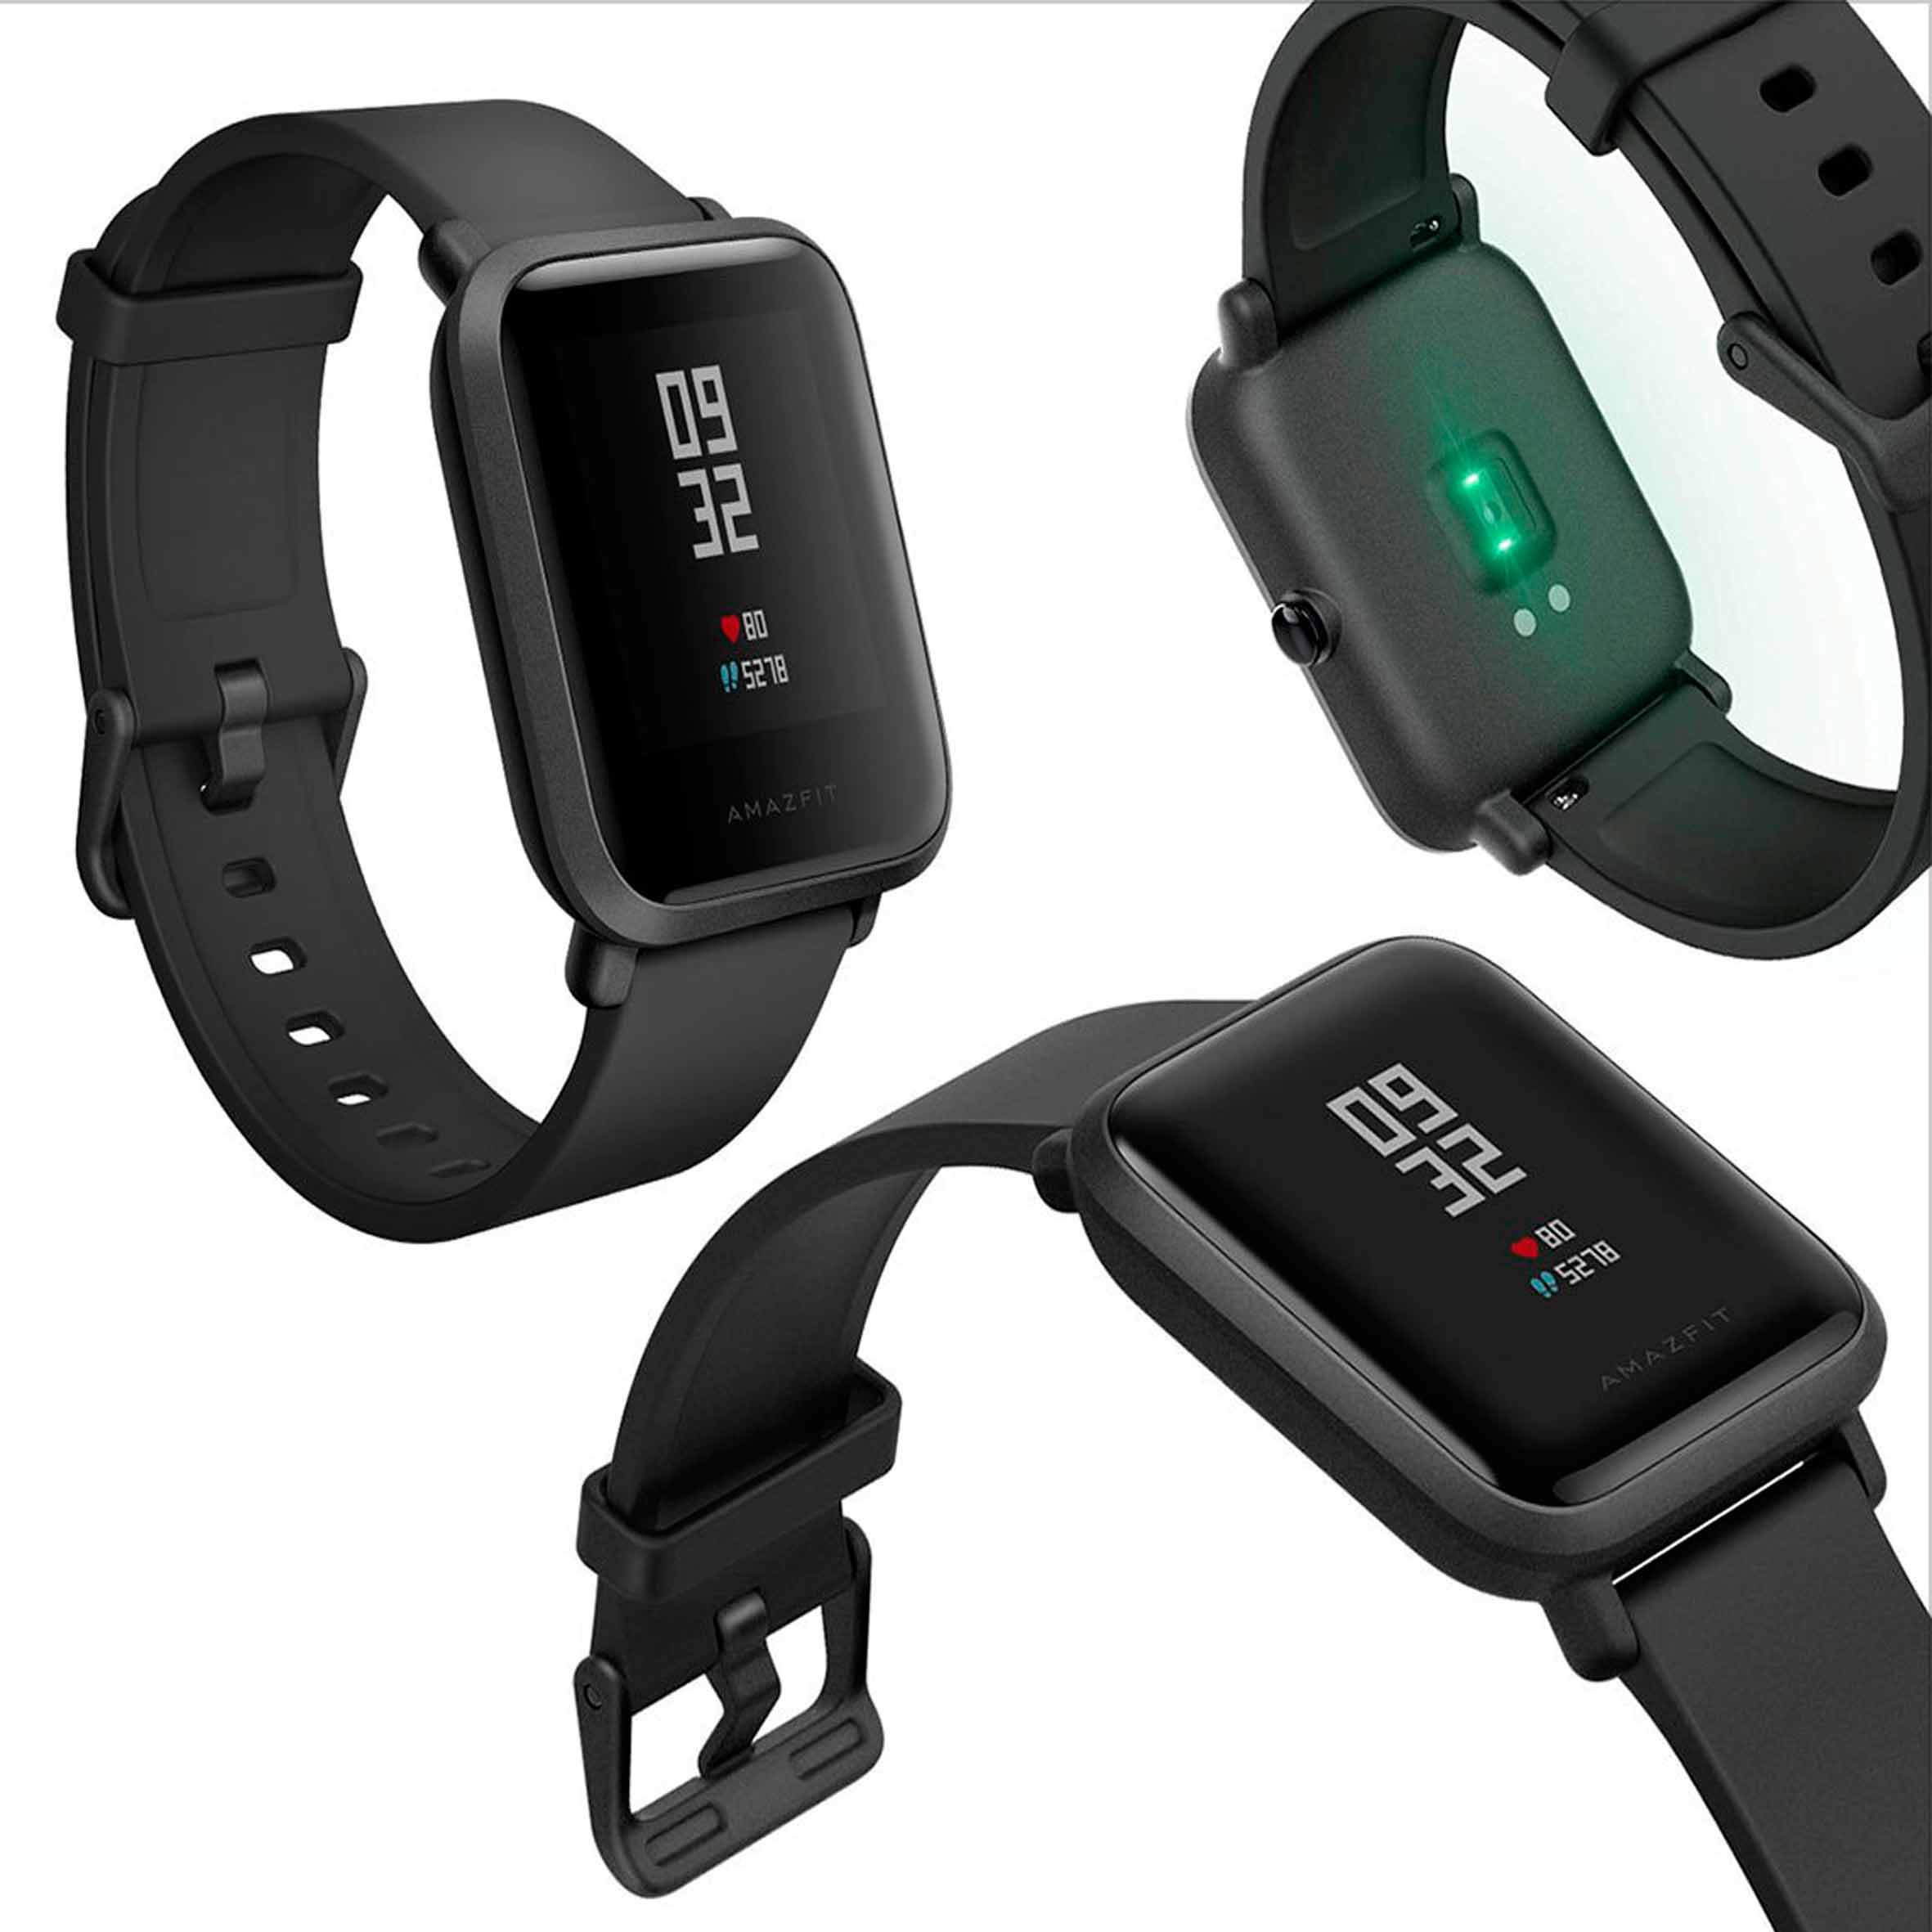 Xiaomi amazfit watch. Смарт-часы Amazfit Bip Black. Часы Xiaomi Amazfit Bip. Часы Xiaomi Amazfit Bip u a2017 Black. Часы Amazfit Bip s [Black].